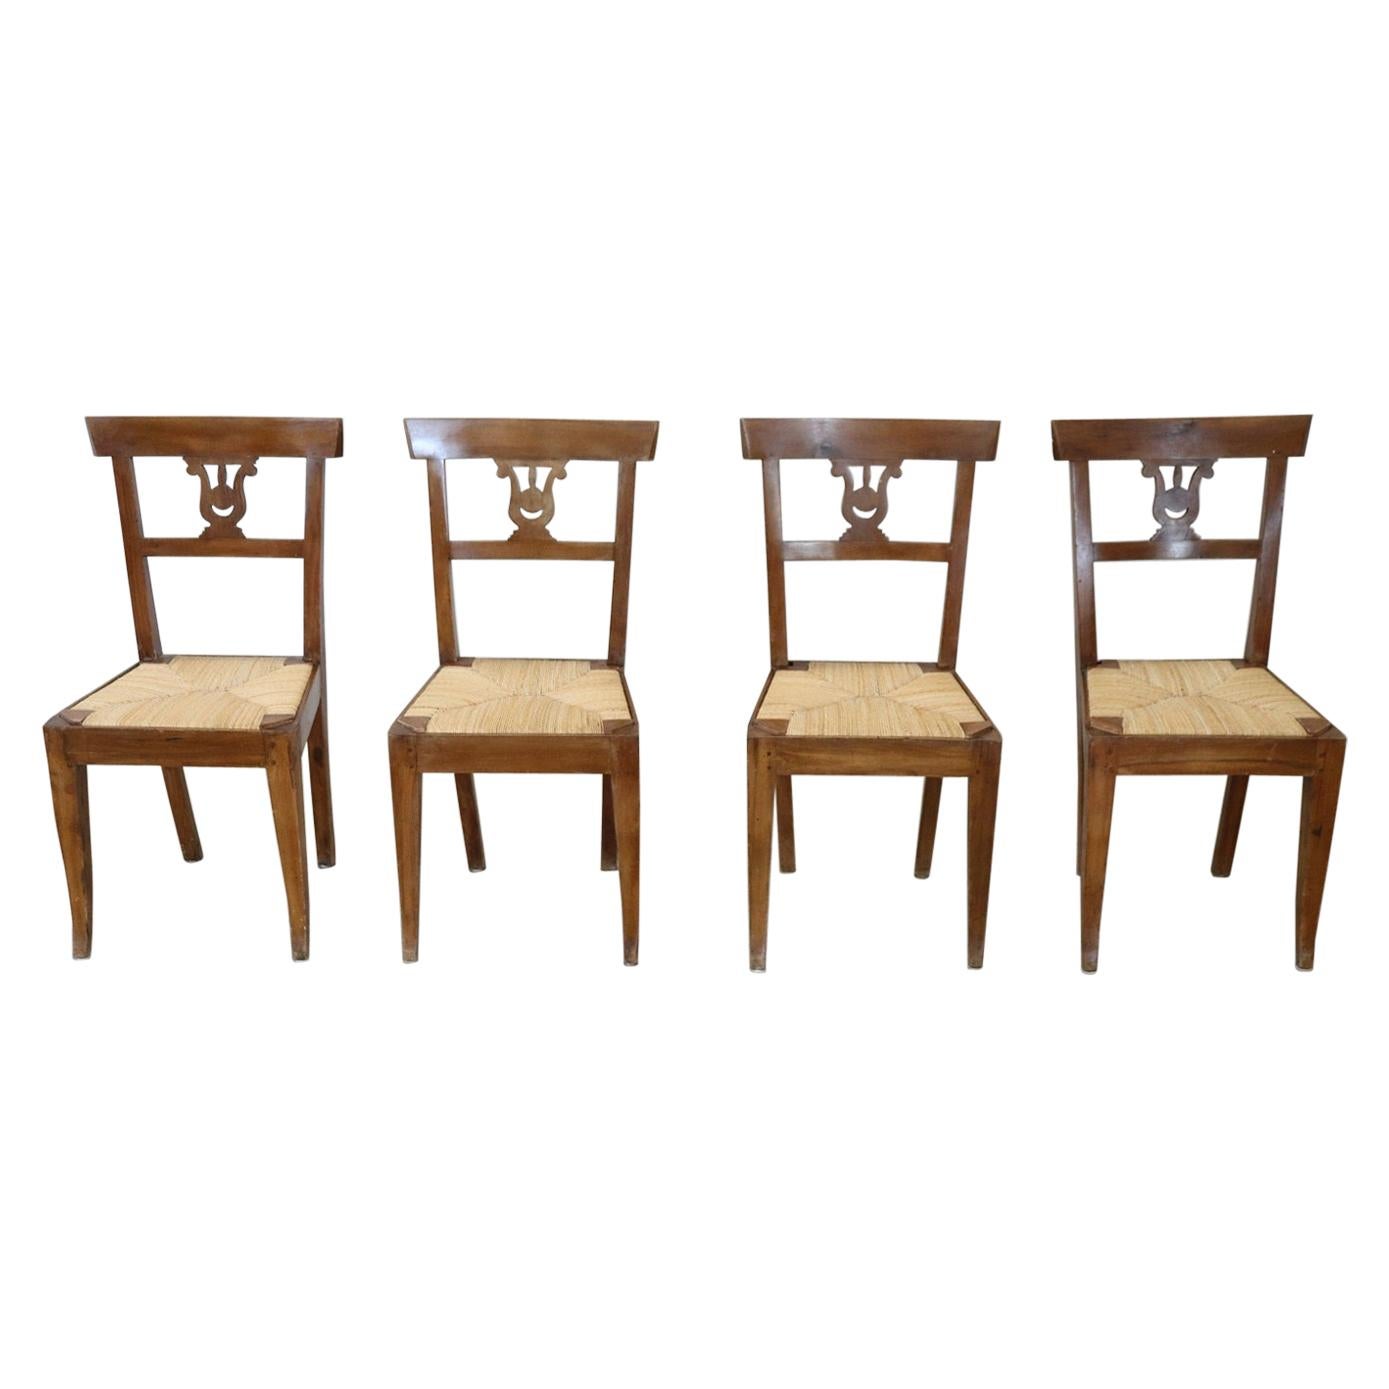 Vier antike Stühle aus geschnitztem Nussbaumholz, Italienisches Empire, frühes 19. Jahrhundert